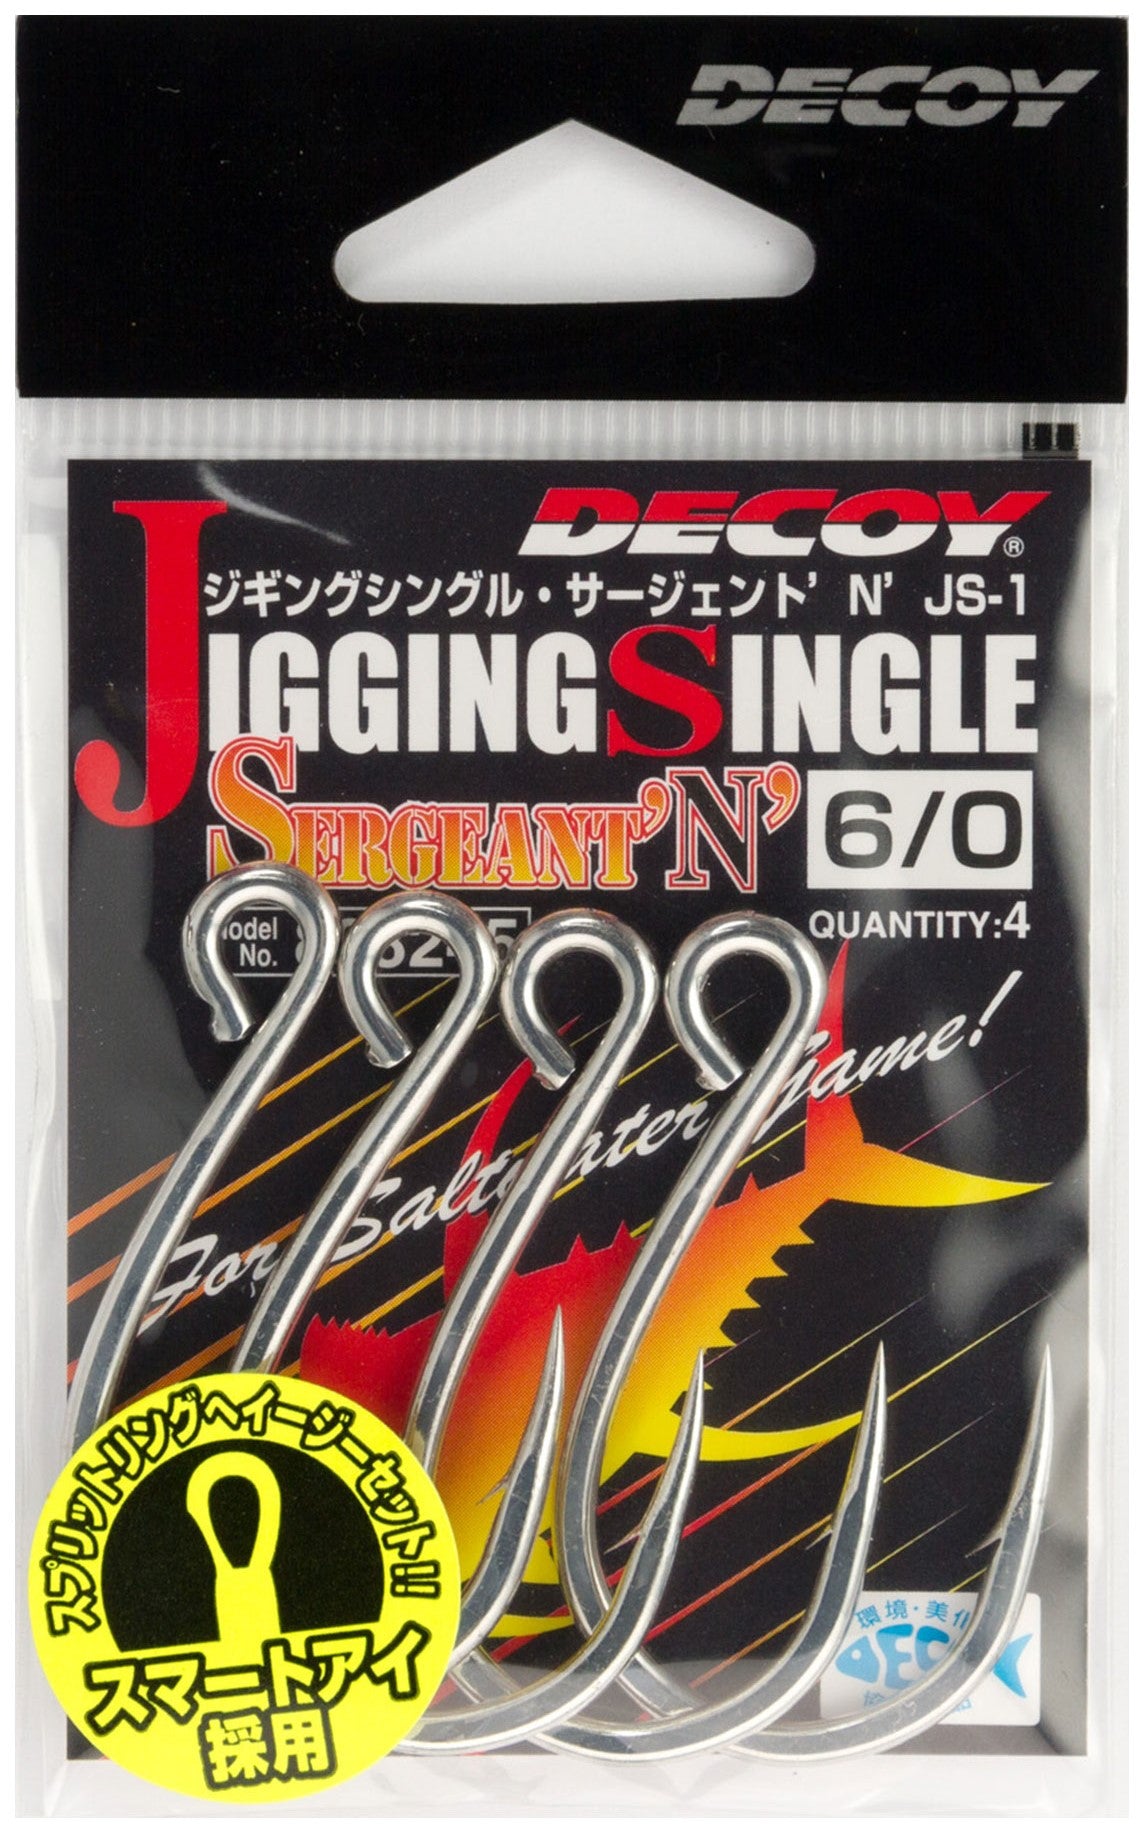 Decoy Jigging Single Sergeant "N" (JS-1)